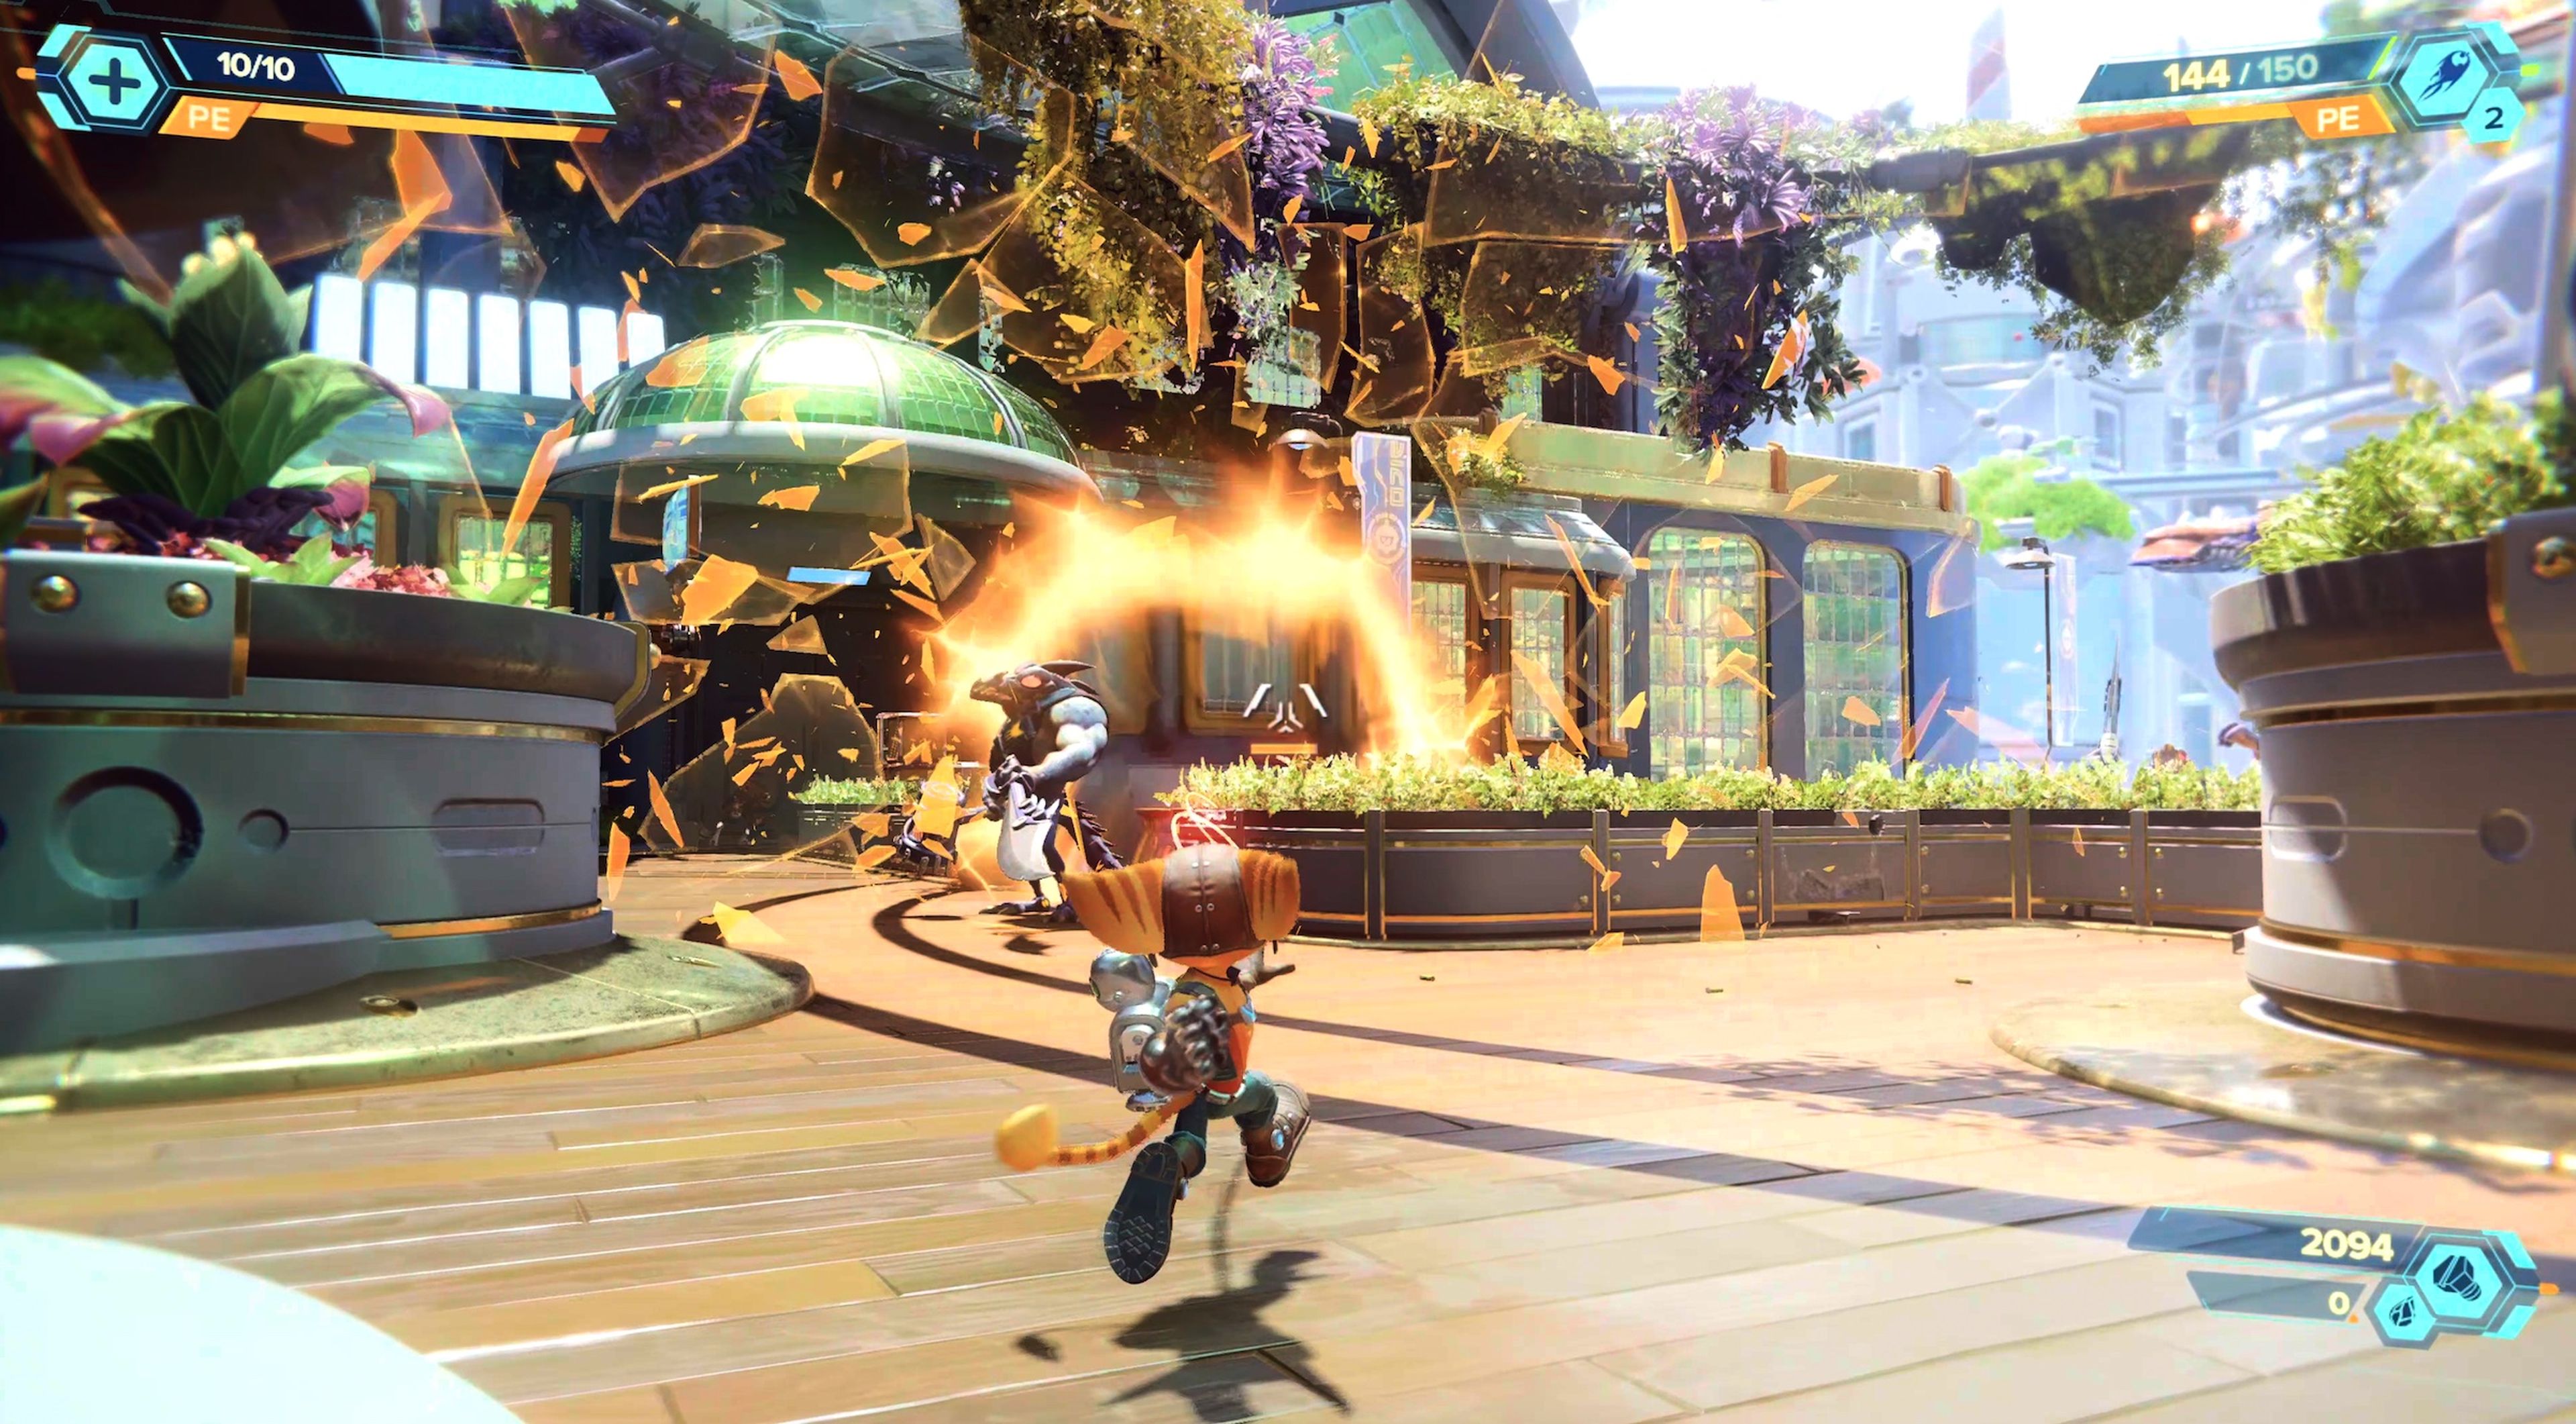 Ratchet & Clank Una Dimensión Aparte, análisis del primer gran exclusivo de  PS5